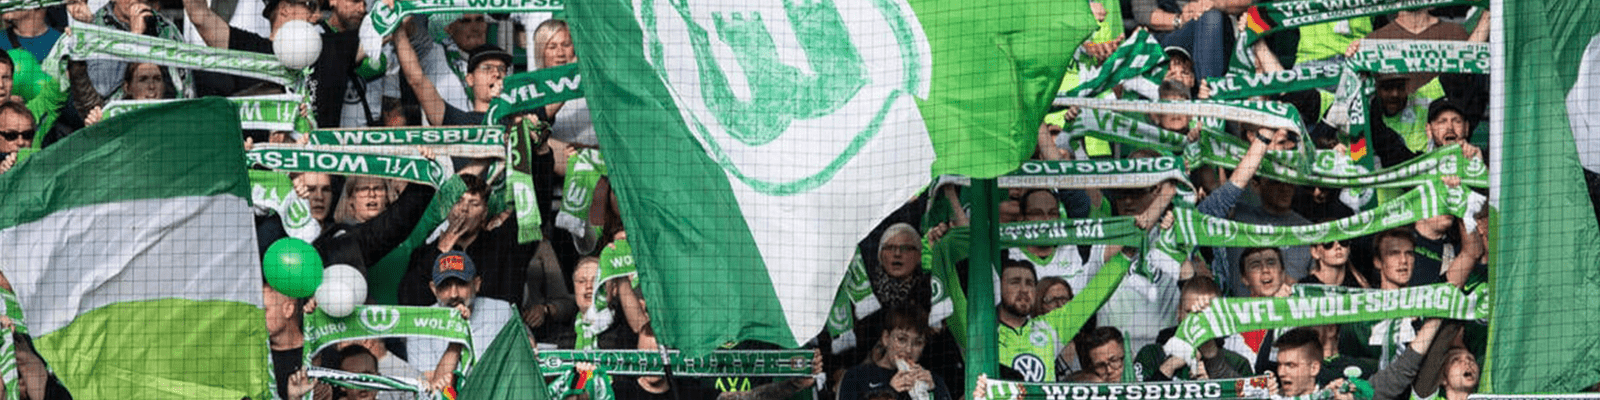 VFL Wolfsburg Tickets & Experiences